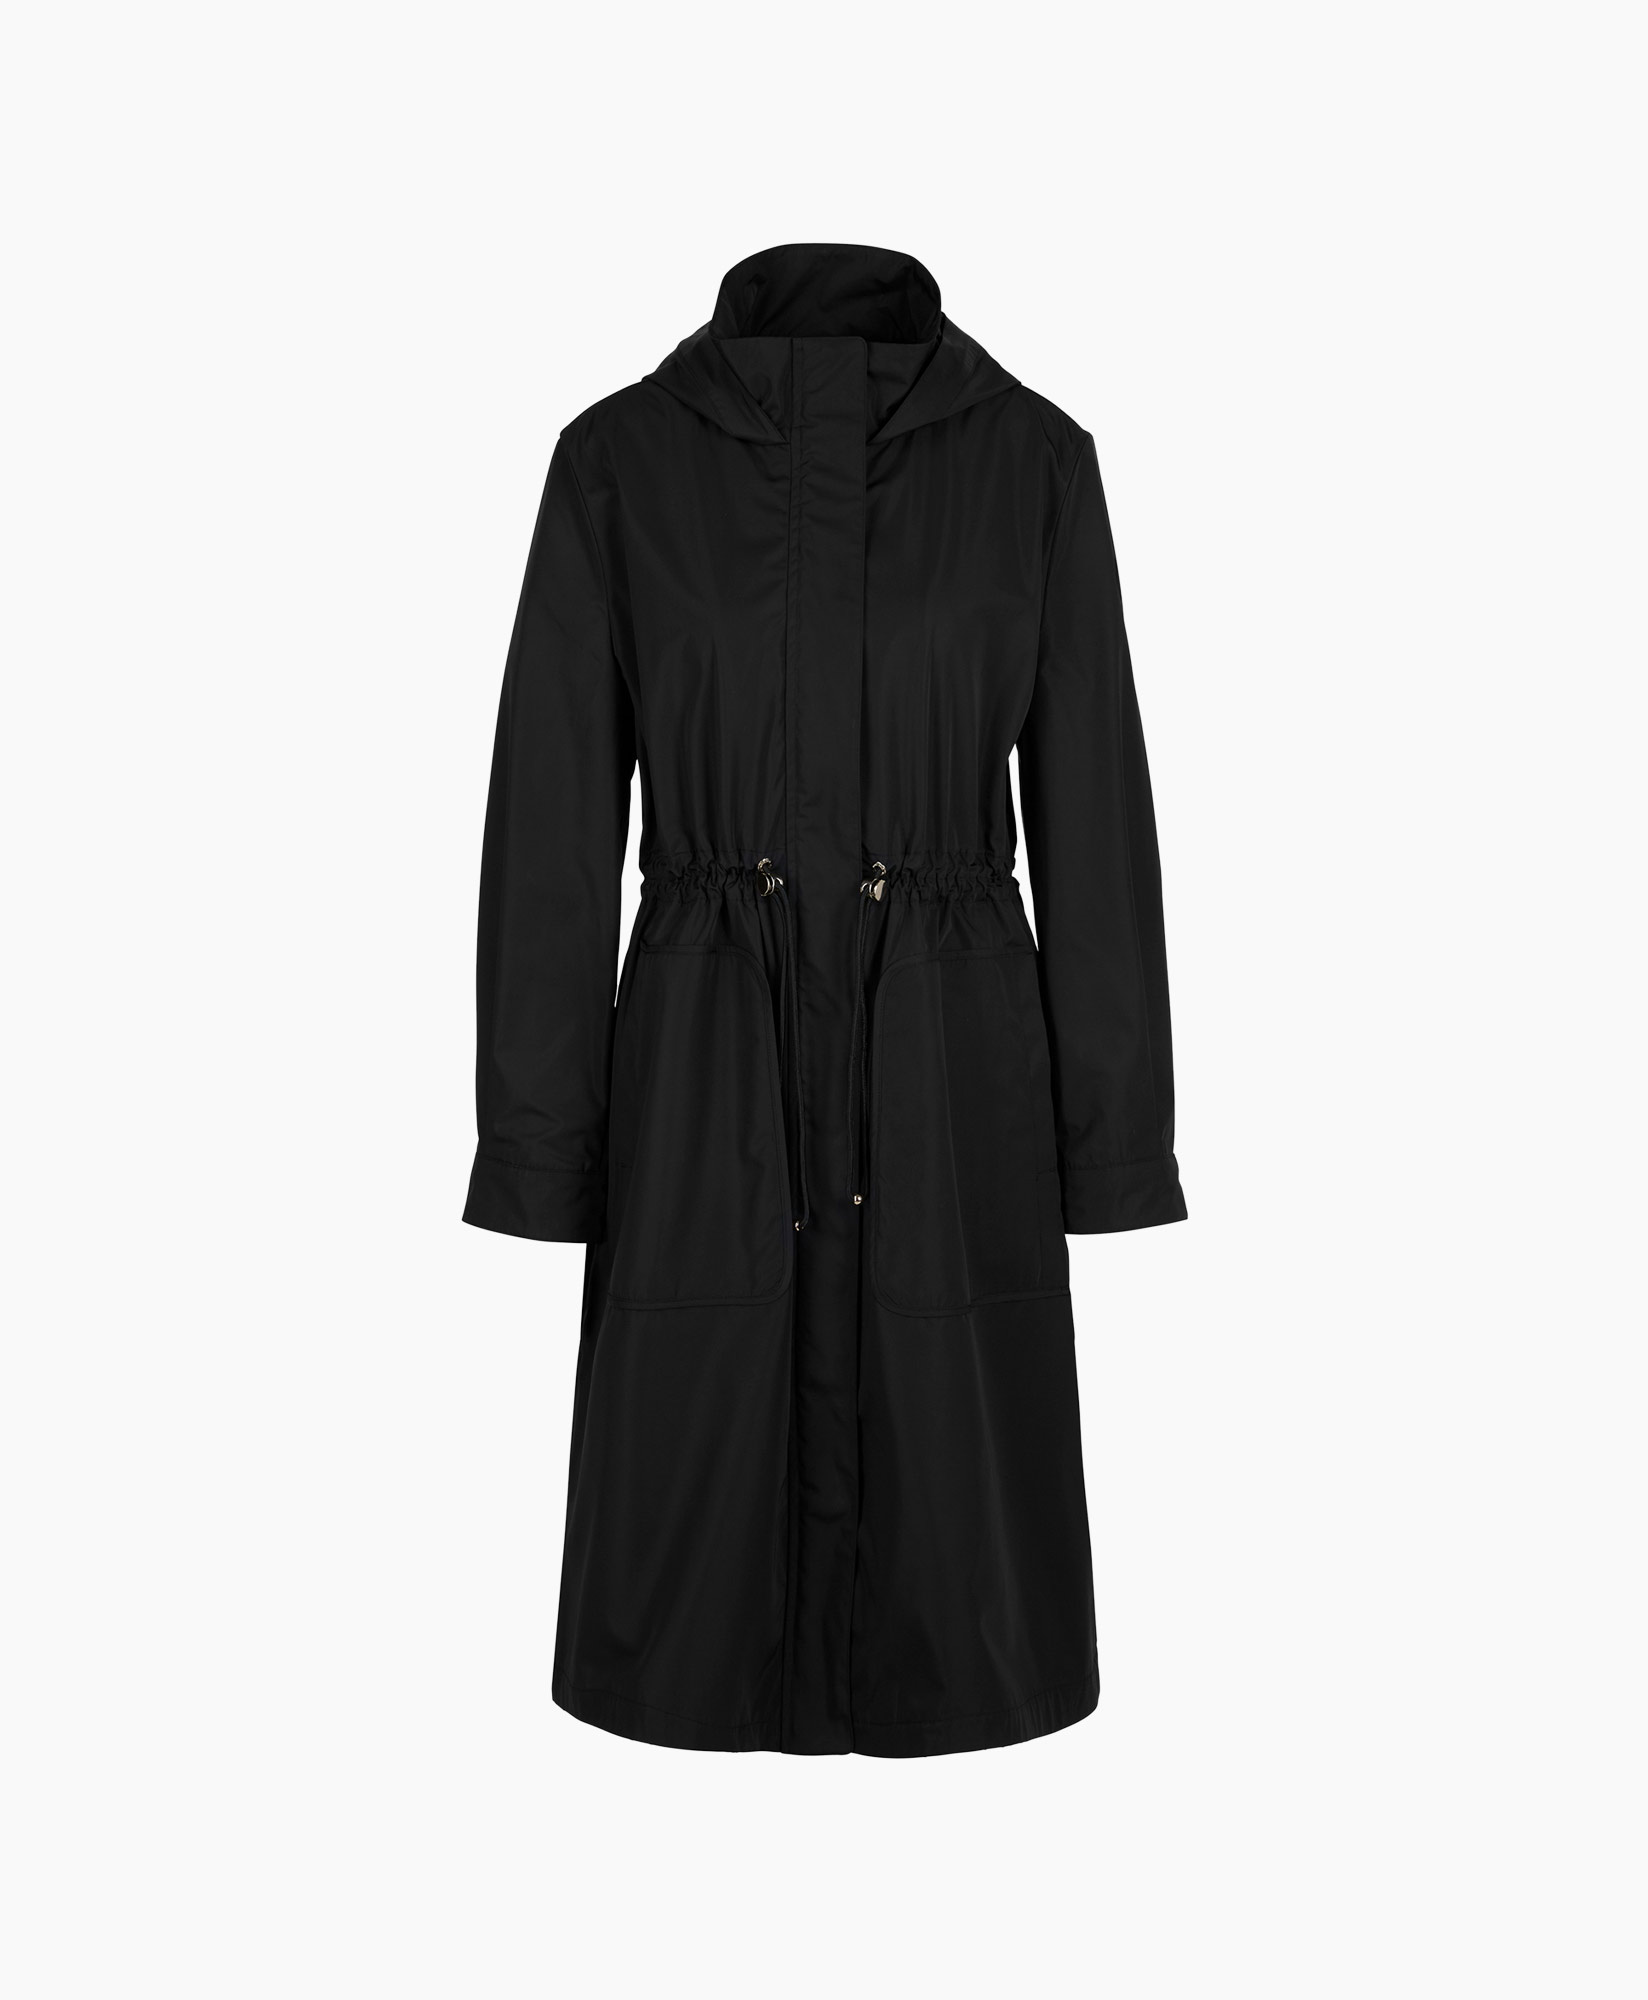 Coat Wc 11.04 W26 Zwart